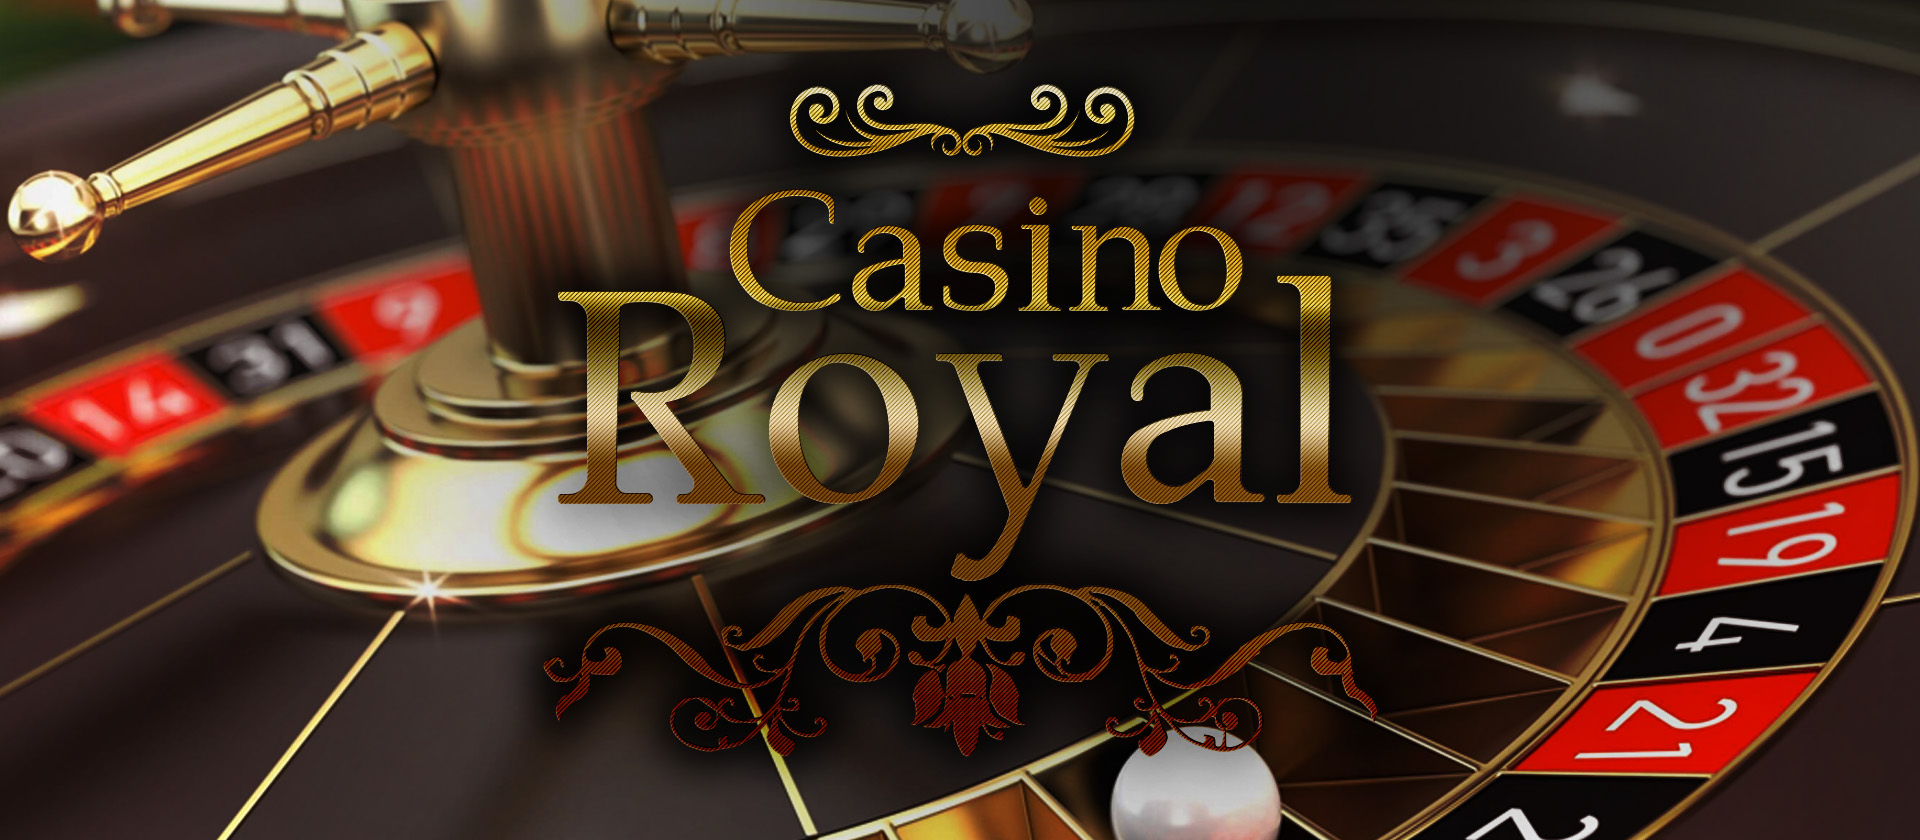 Royal casino 1 1вин 1win bet2022 ru